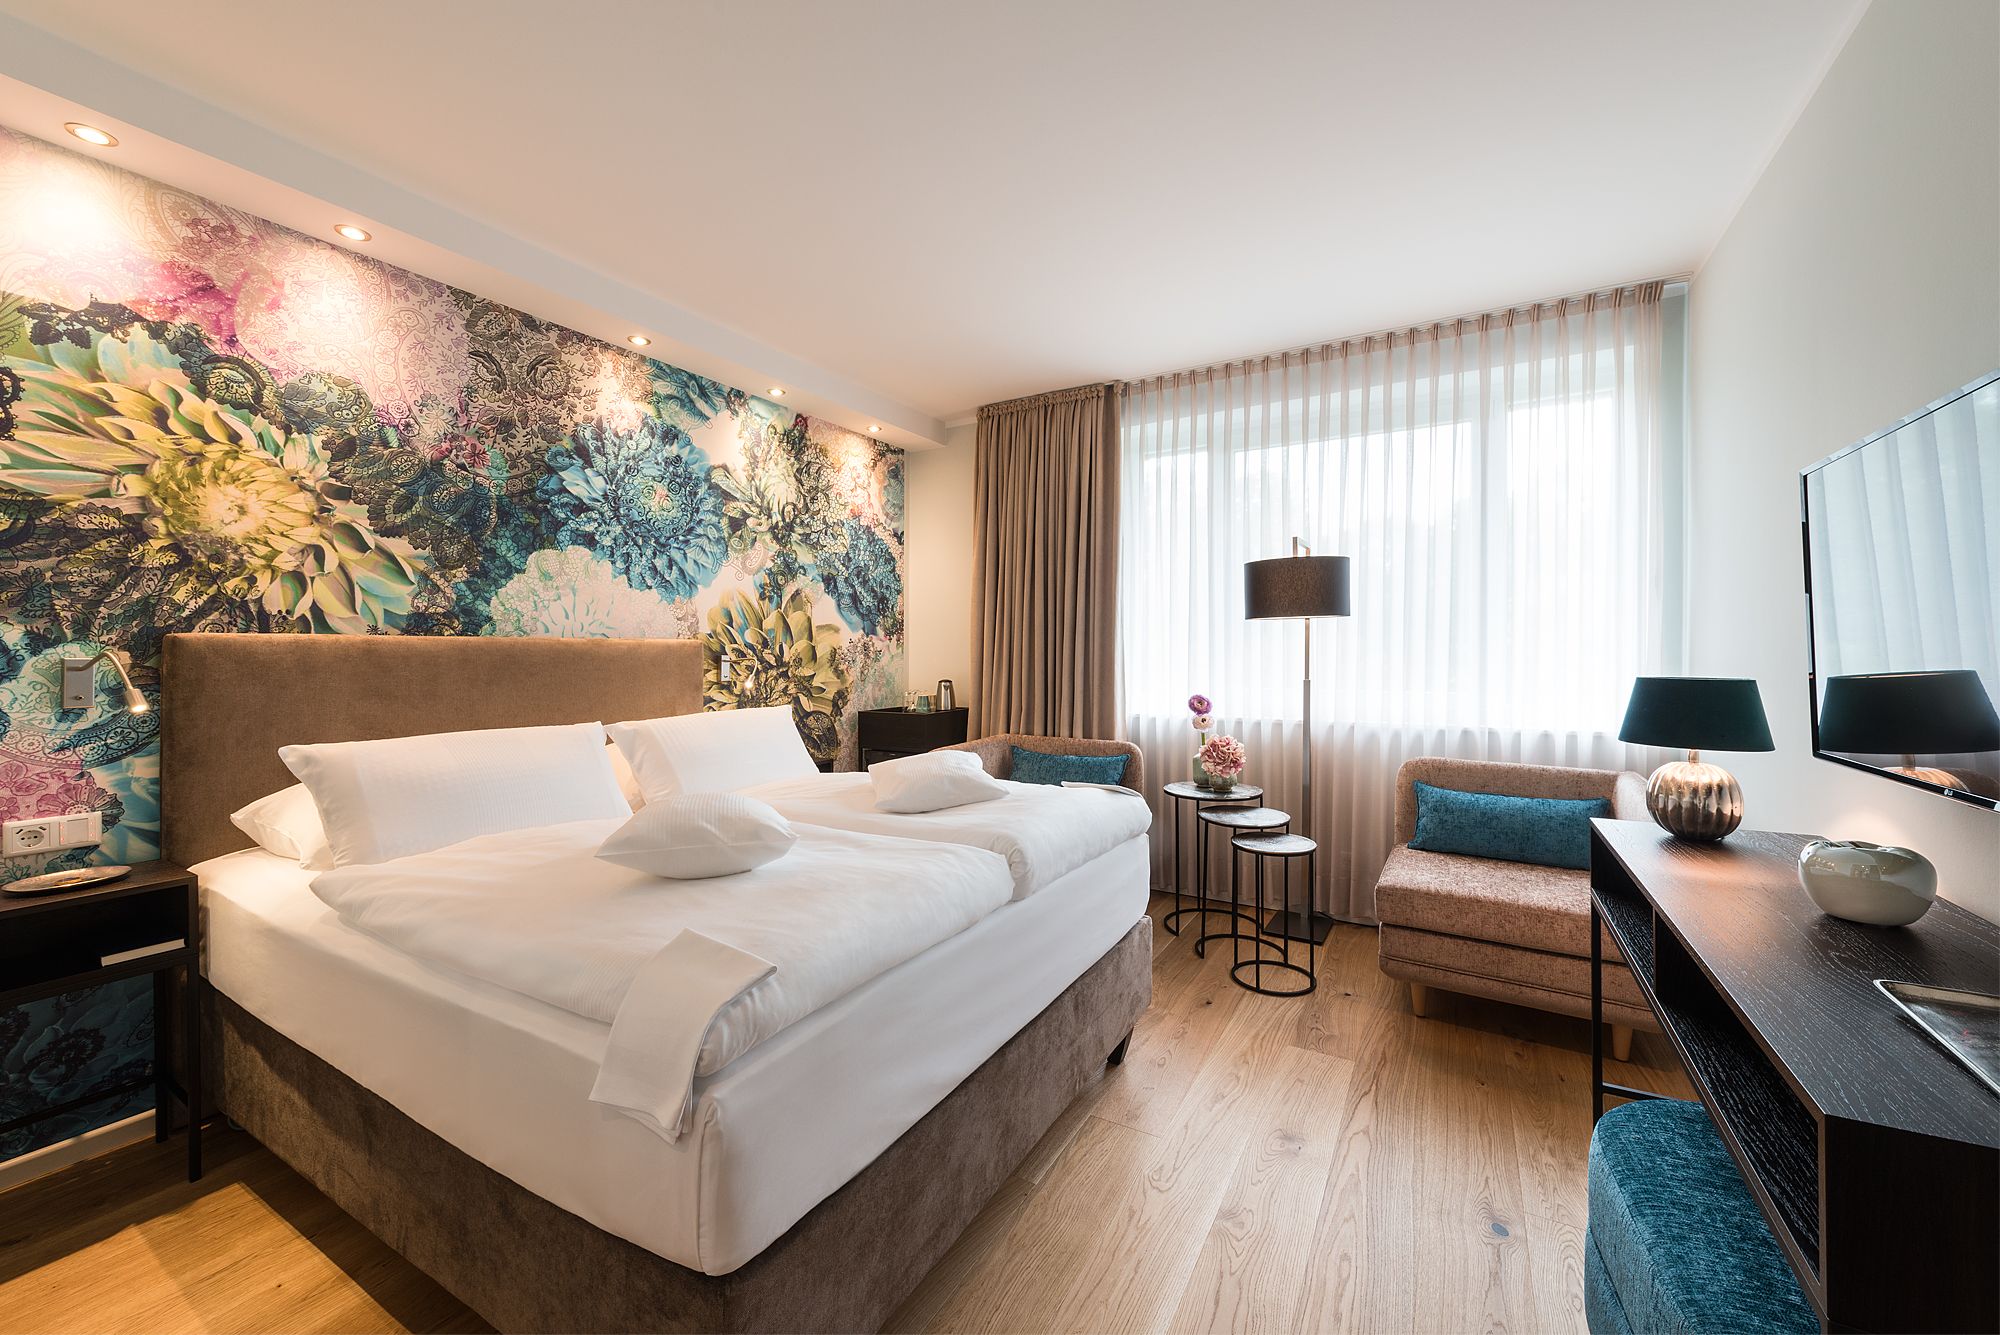 Zimmer der Kategorie Auszeit - Beispiel - Schlafbereich - Hotel Munte am Stadtwald - Bremen - Ringhotels